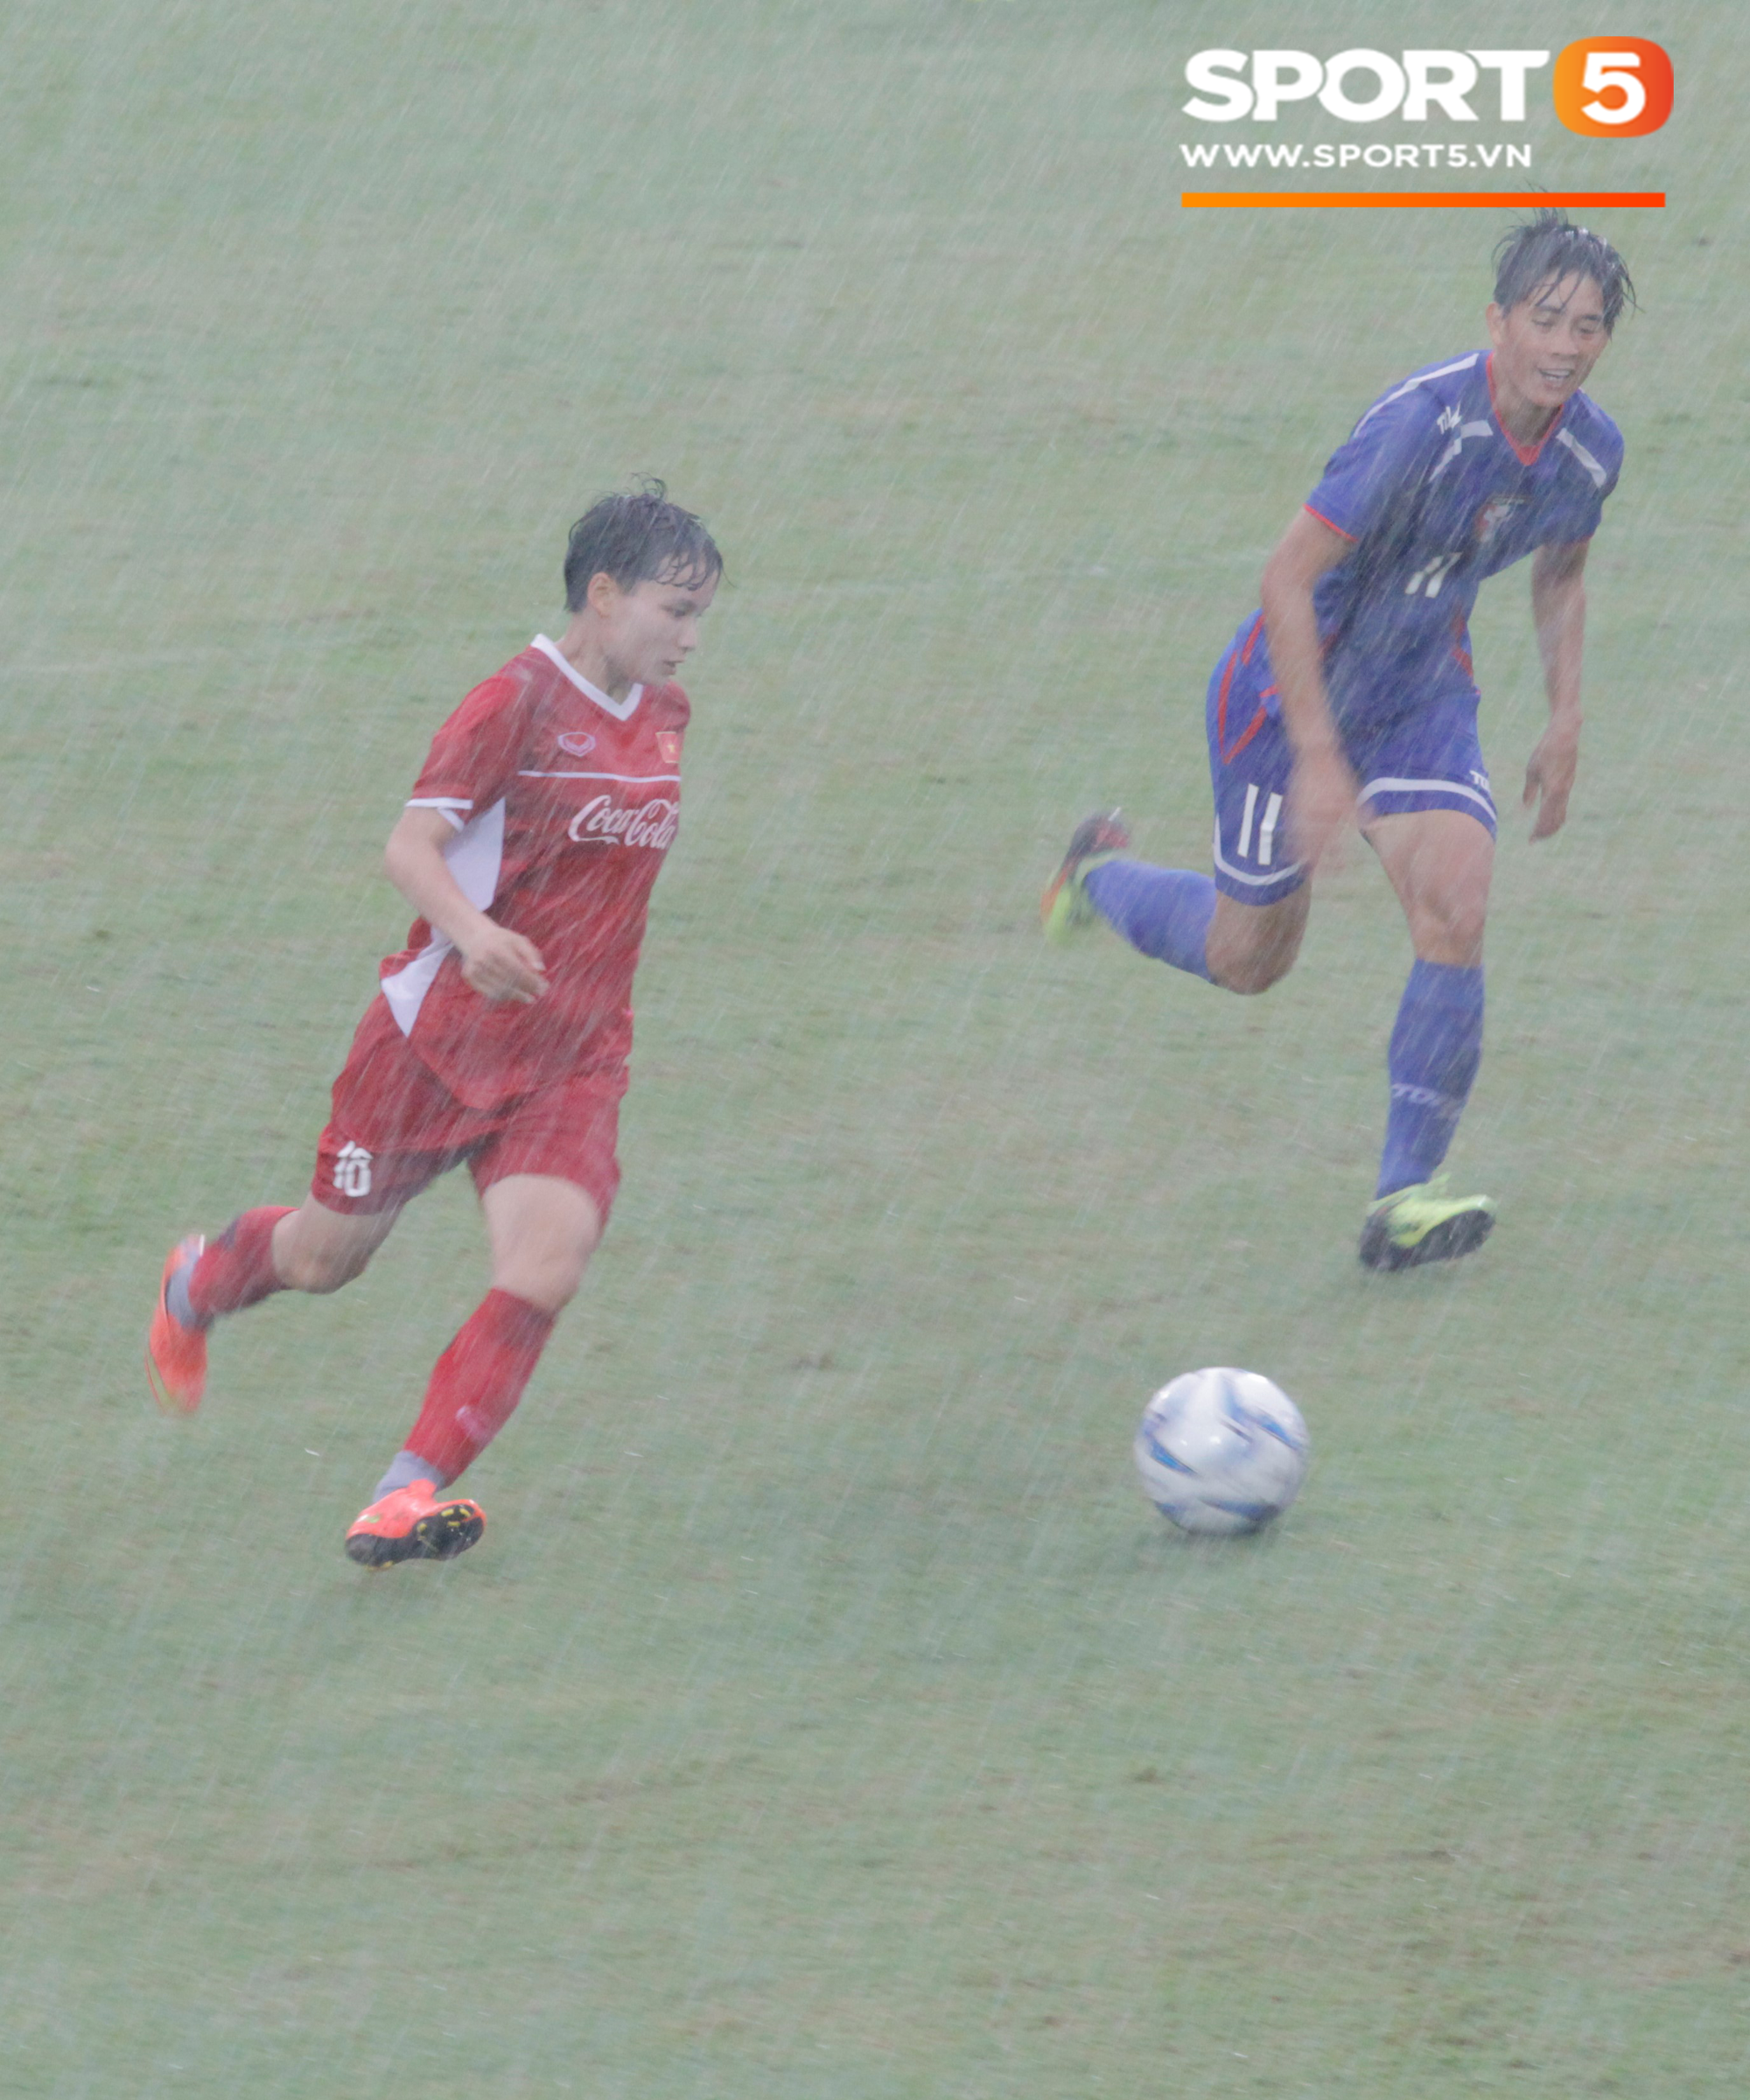 ĐT nữ Việt Nam đánh bại Đài Bắc Trung Hoa 4-0 trong trận tái đấu - Ảnh 2.